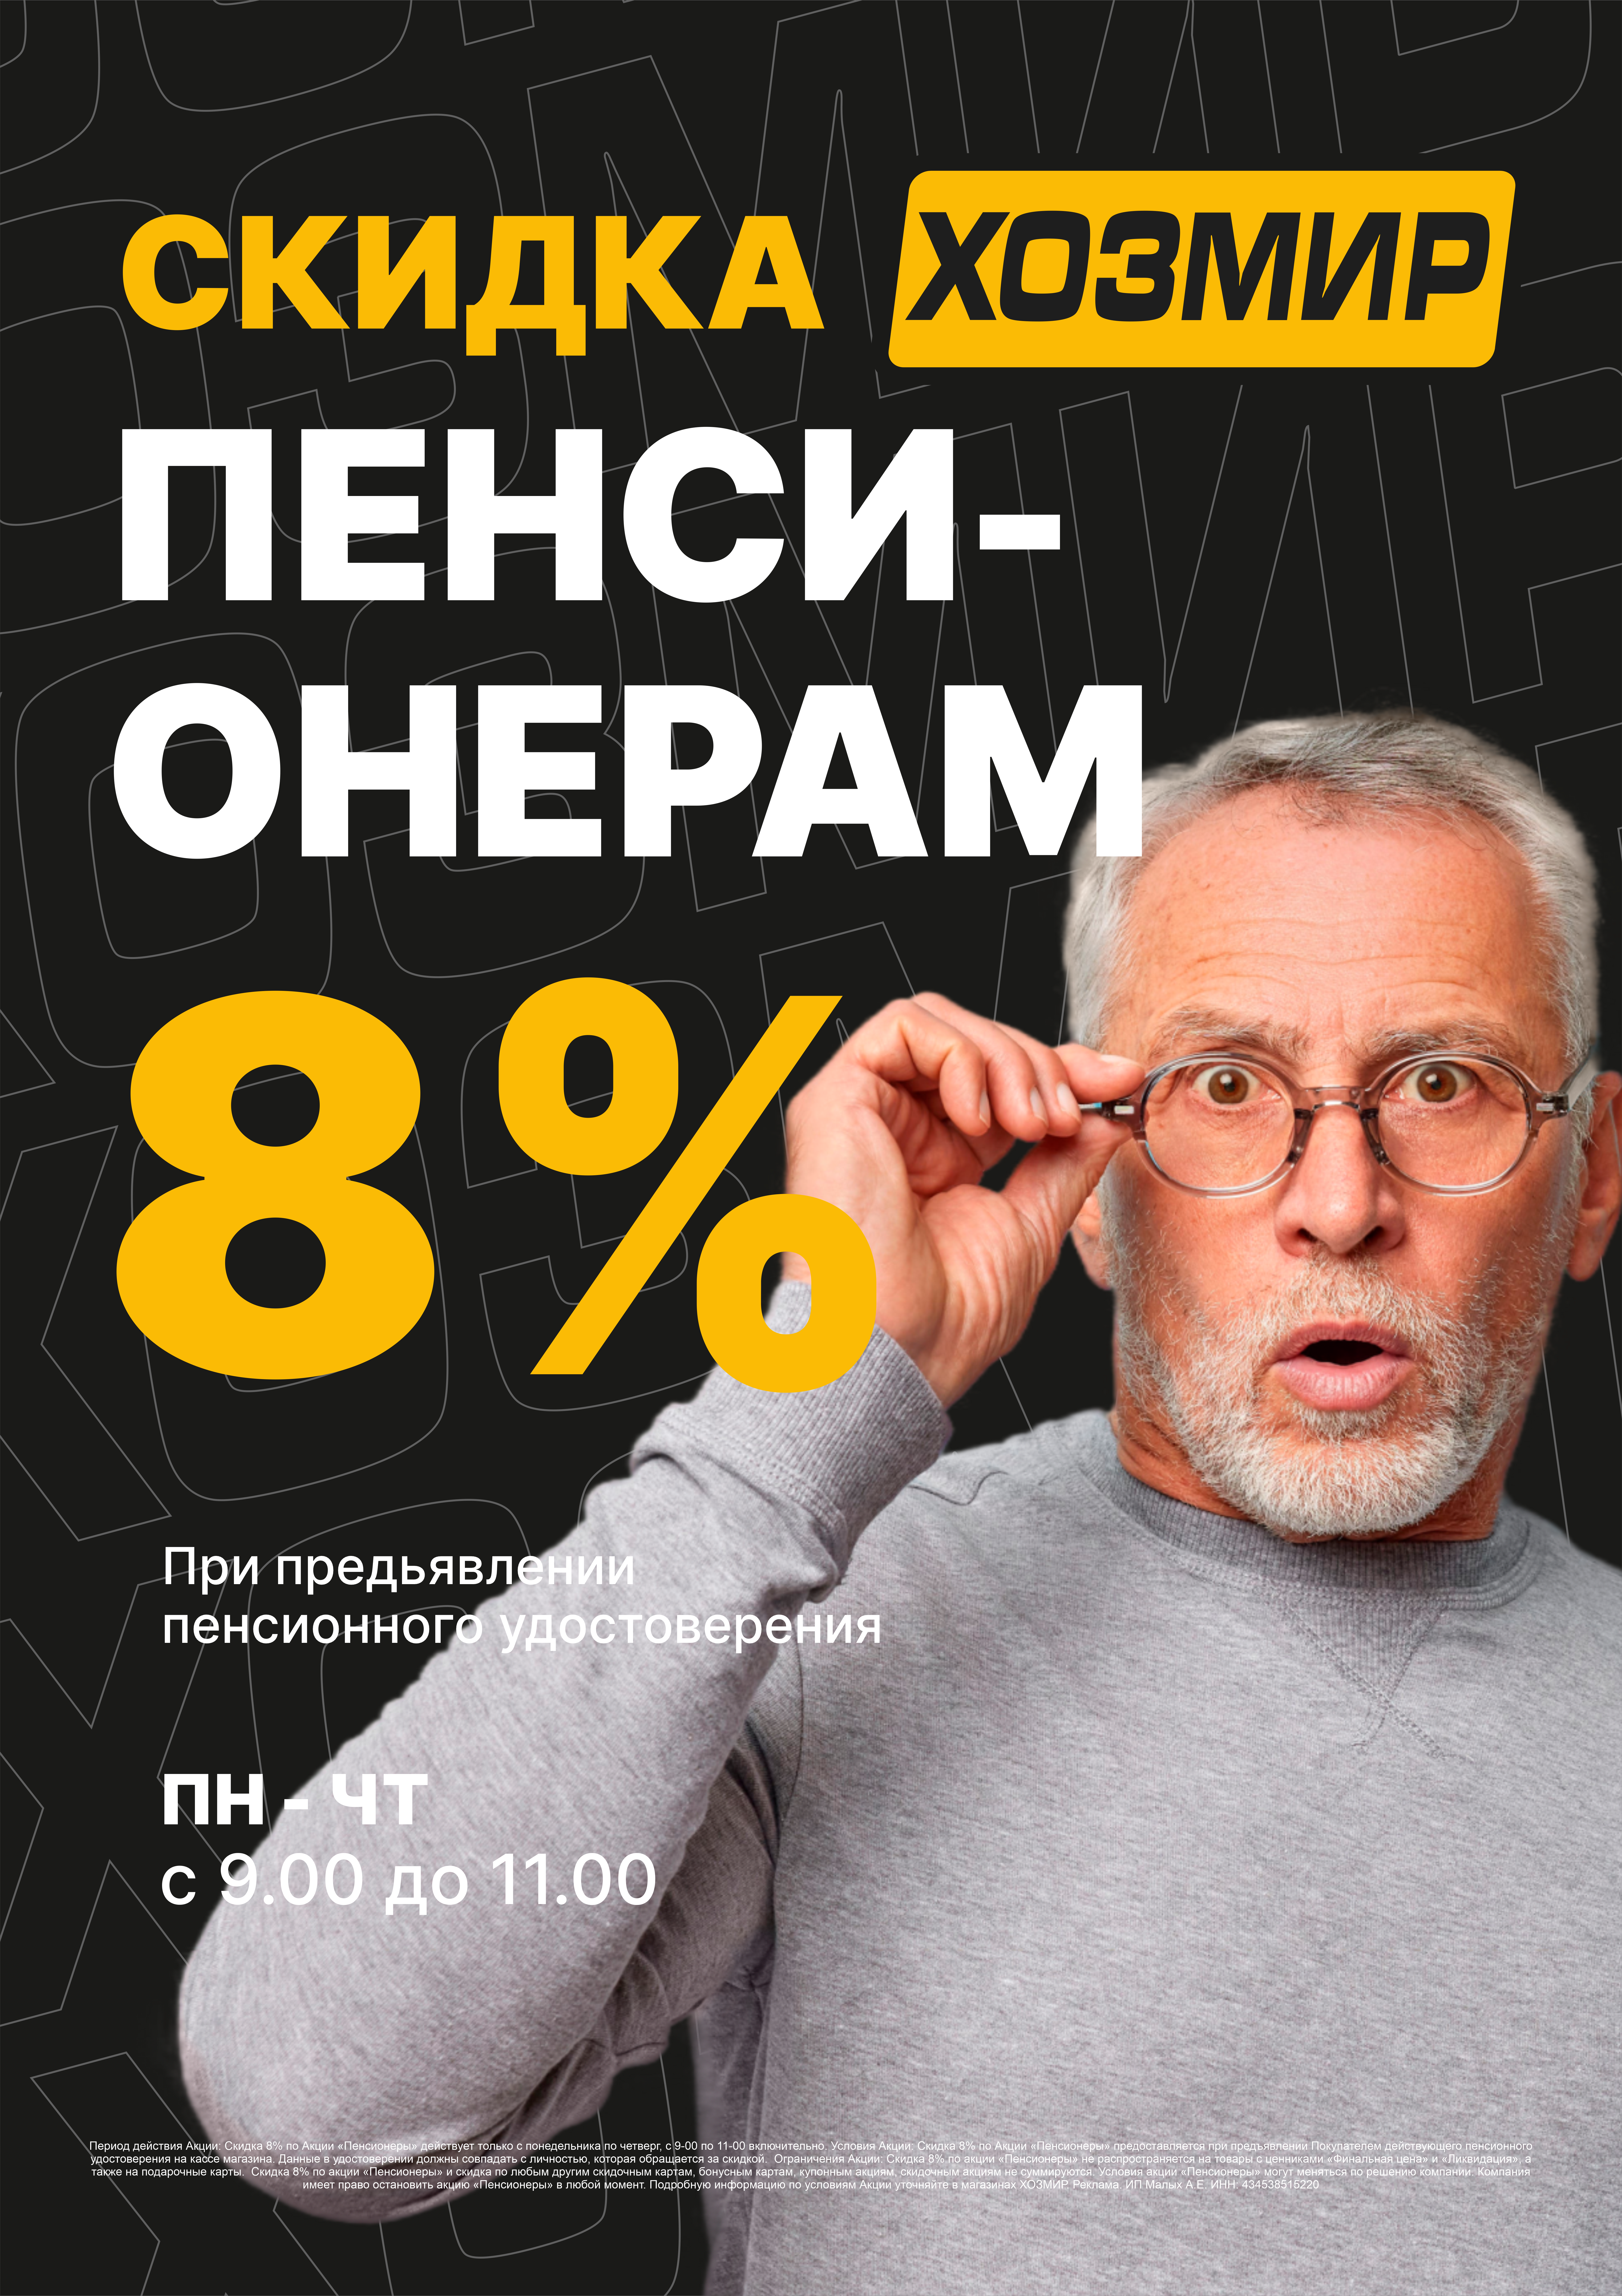 Скидка 8% пенсионерам в Хозмир*